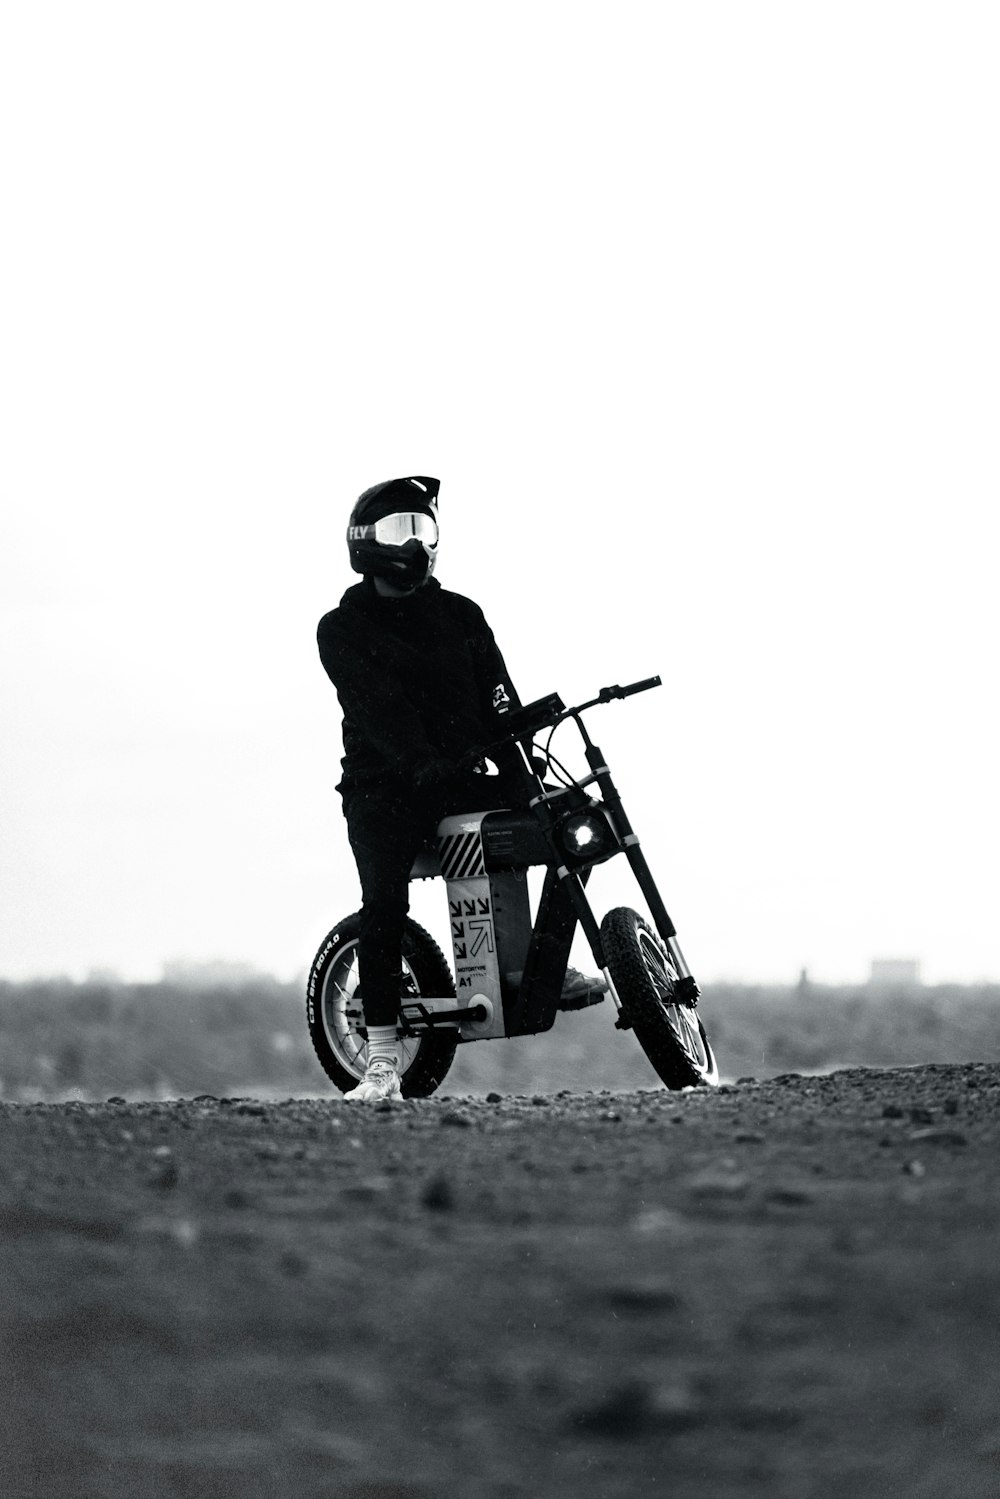 una foto in bianco e nero di una persona su una moto